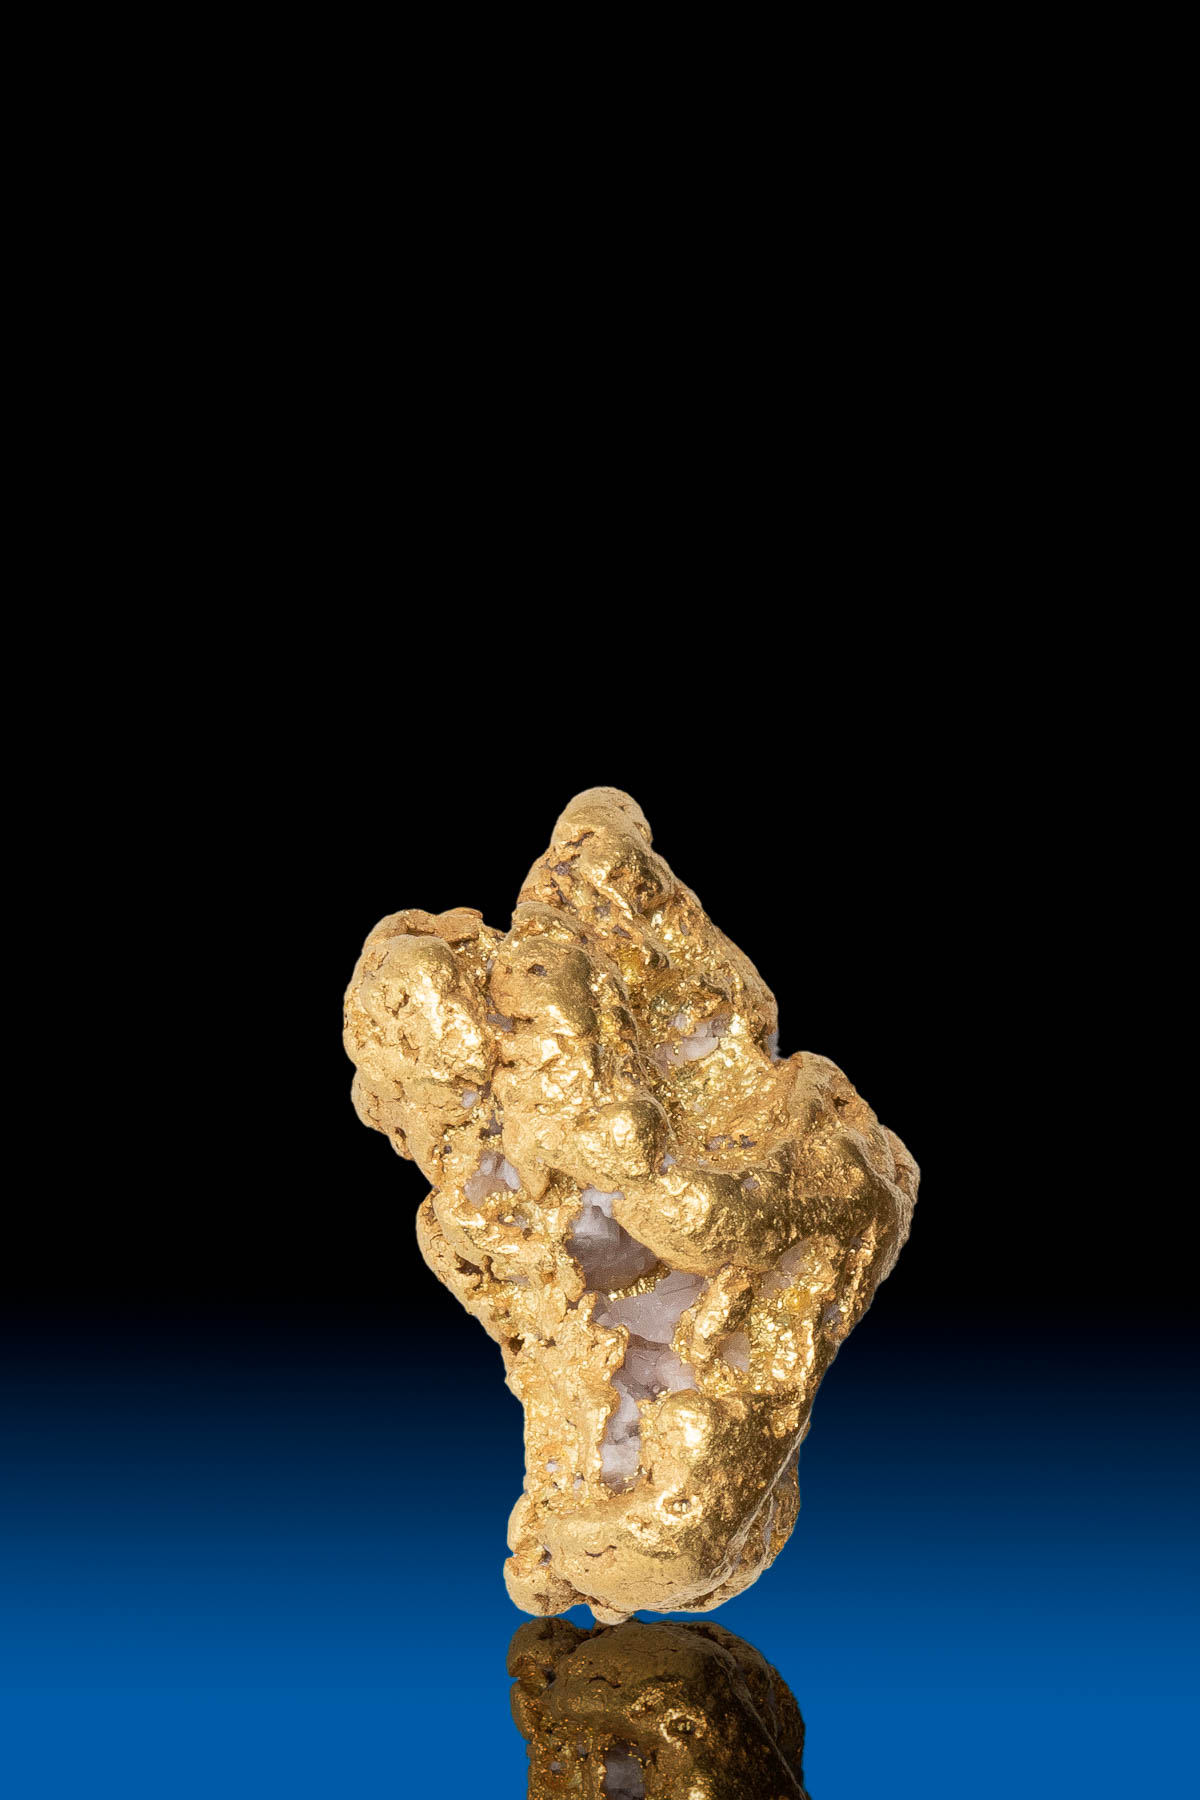 Chunky Rugged Yukon Natural Gold Nugget - 4.49 grams